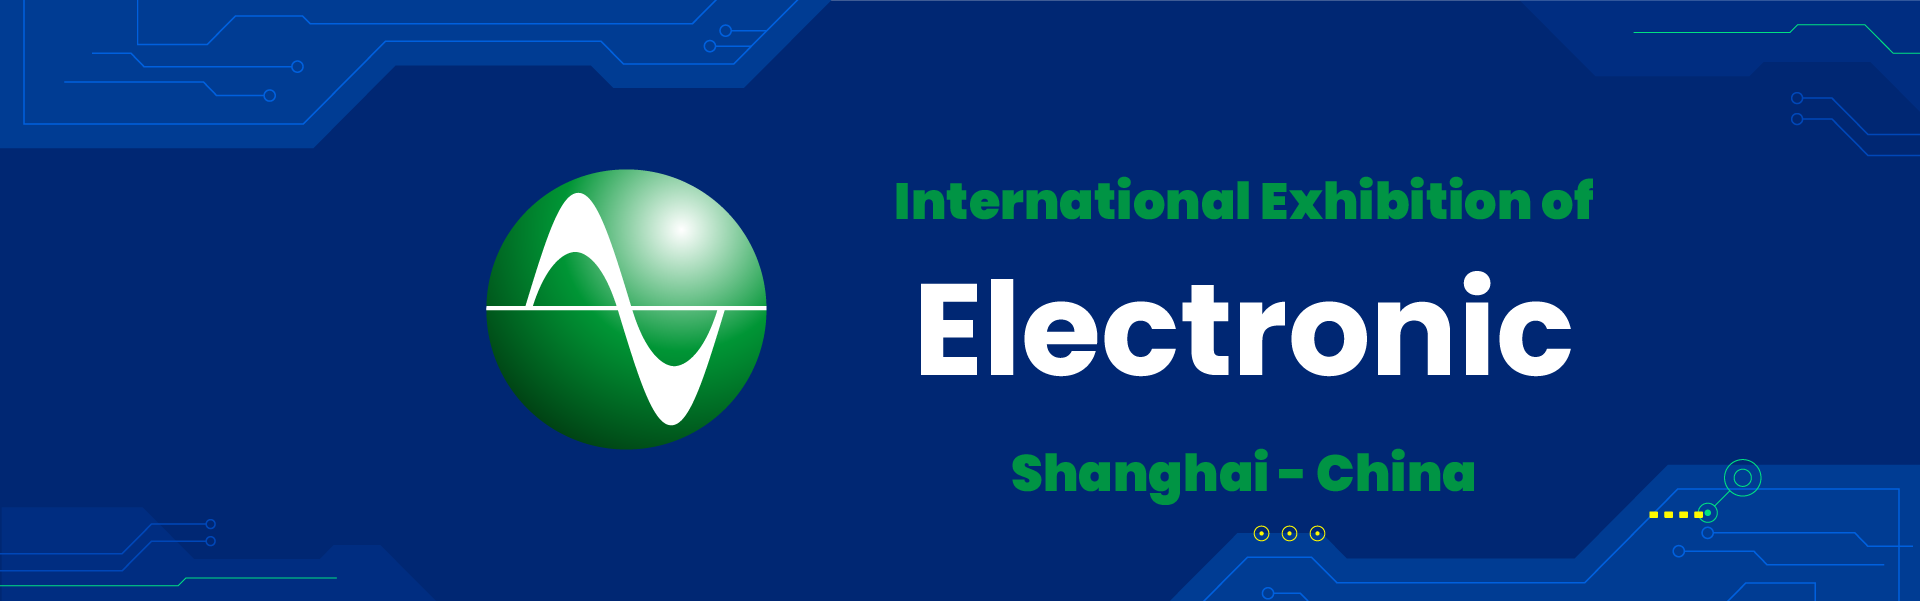 Electronic exhibition China Shanghai